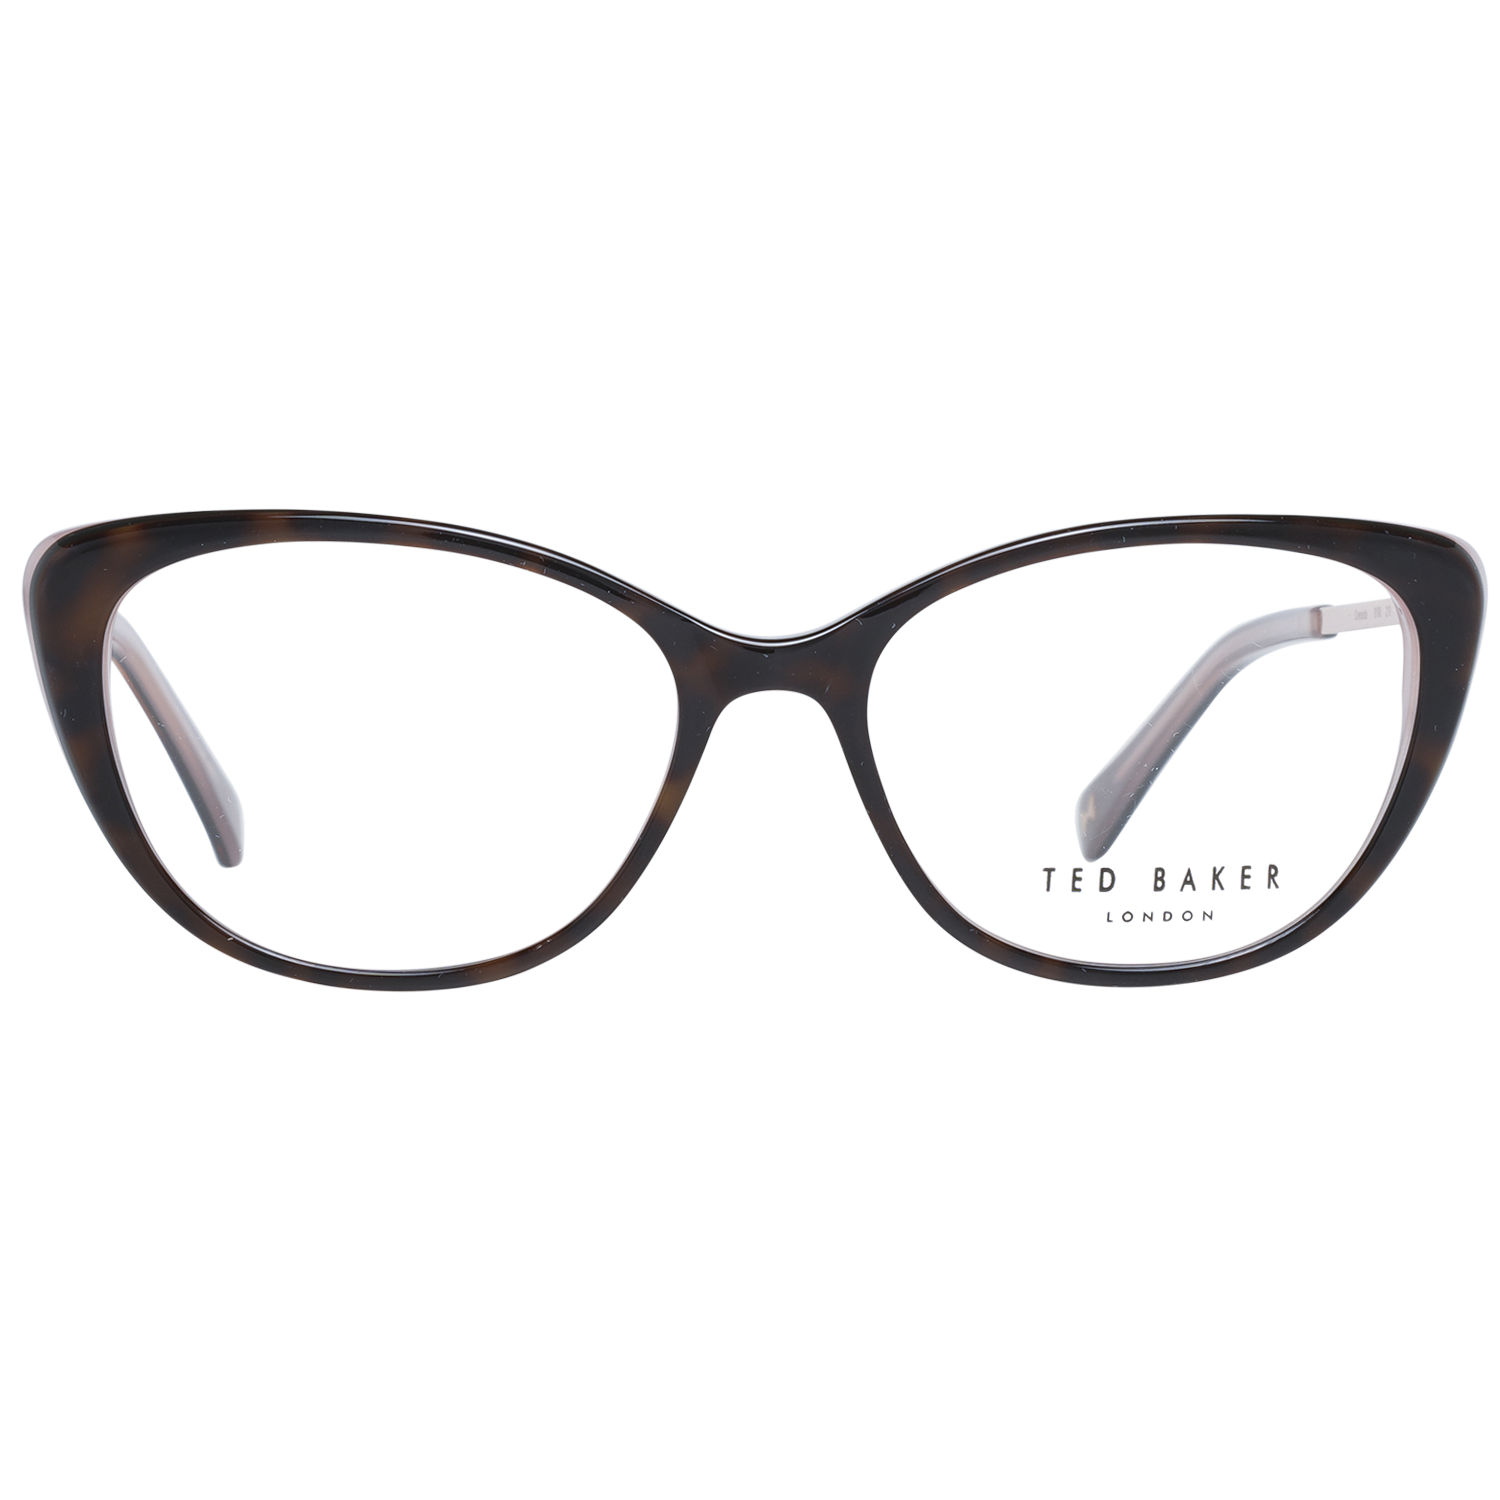 Ted Baker Frames Ted Baker Optical Frame Prescription Glasses TB9198 219 51 Eyeglasses Eyewear UK USA Australia 